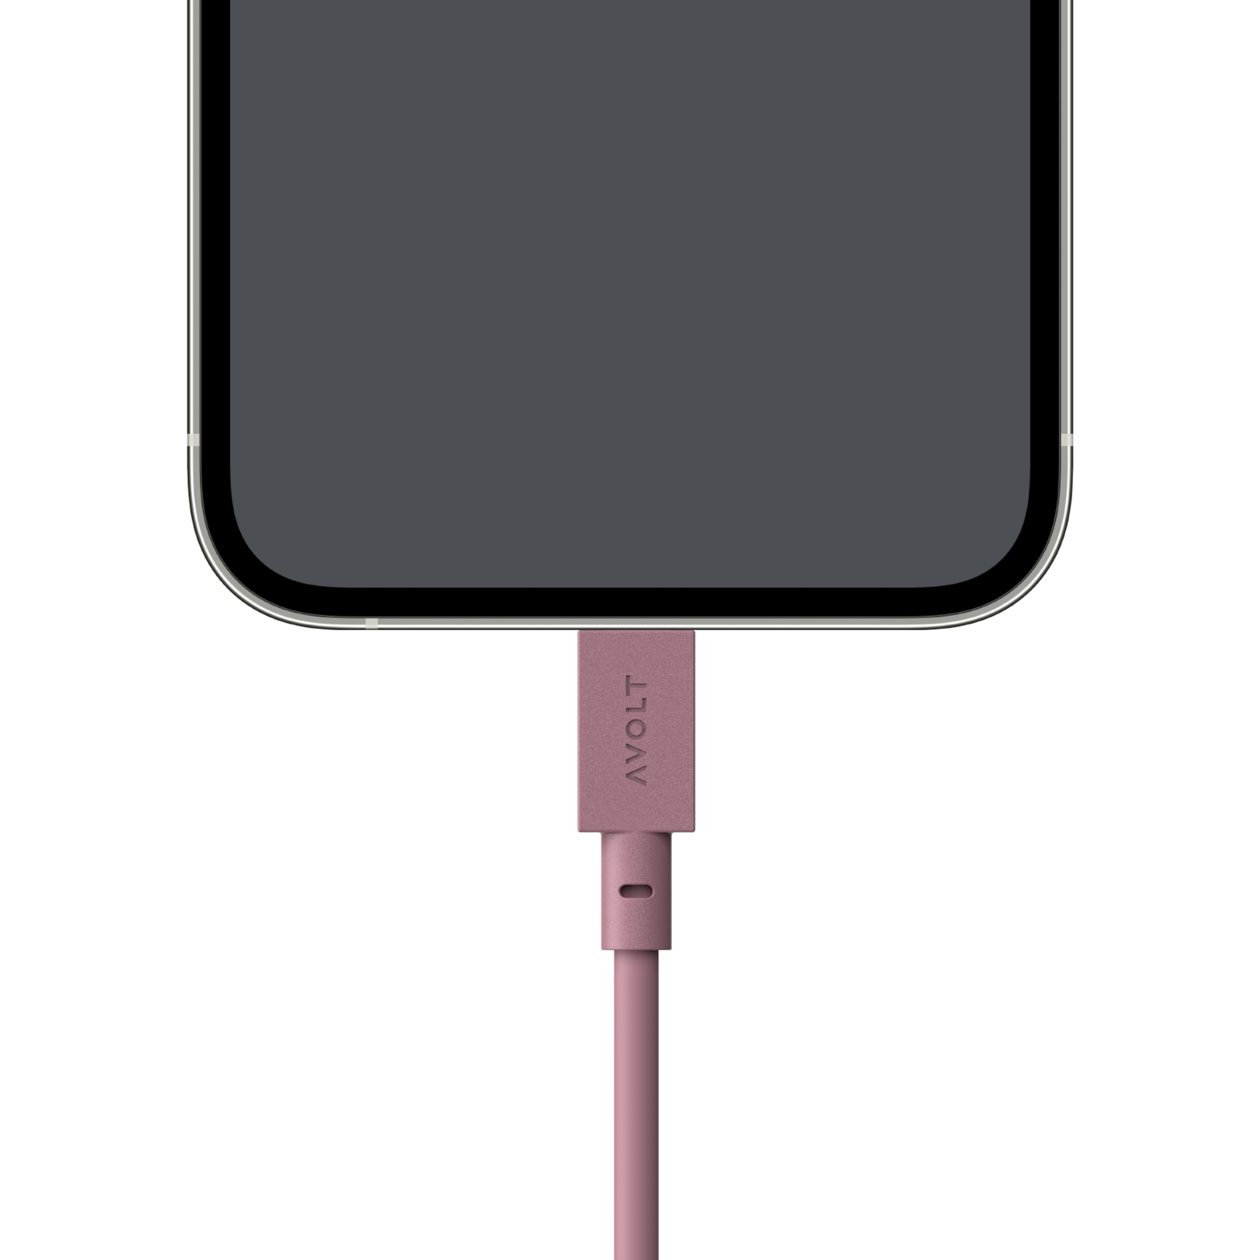 Cablu de încărcare Cable 1 USB-A to Apple lightning, Culoare Rusty Red - Avolt